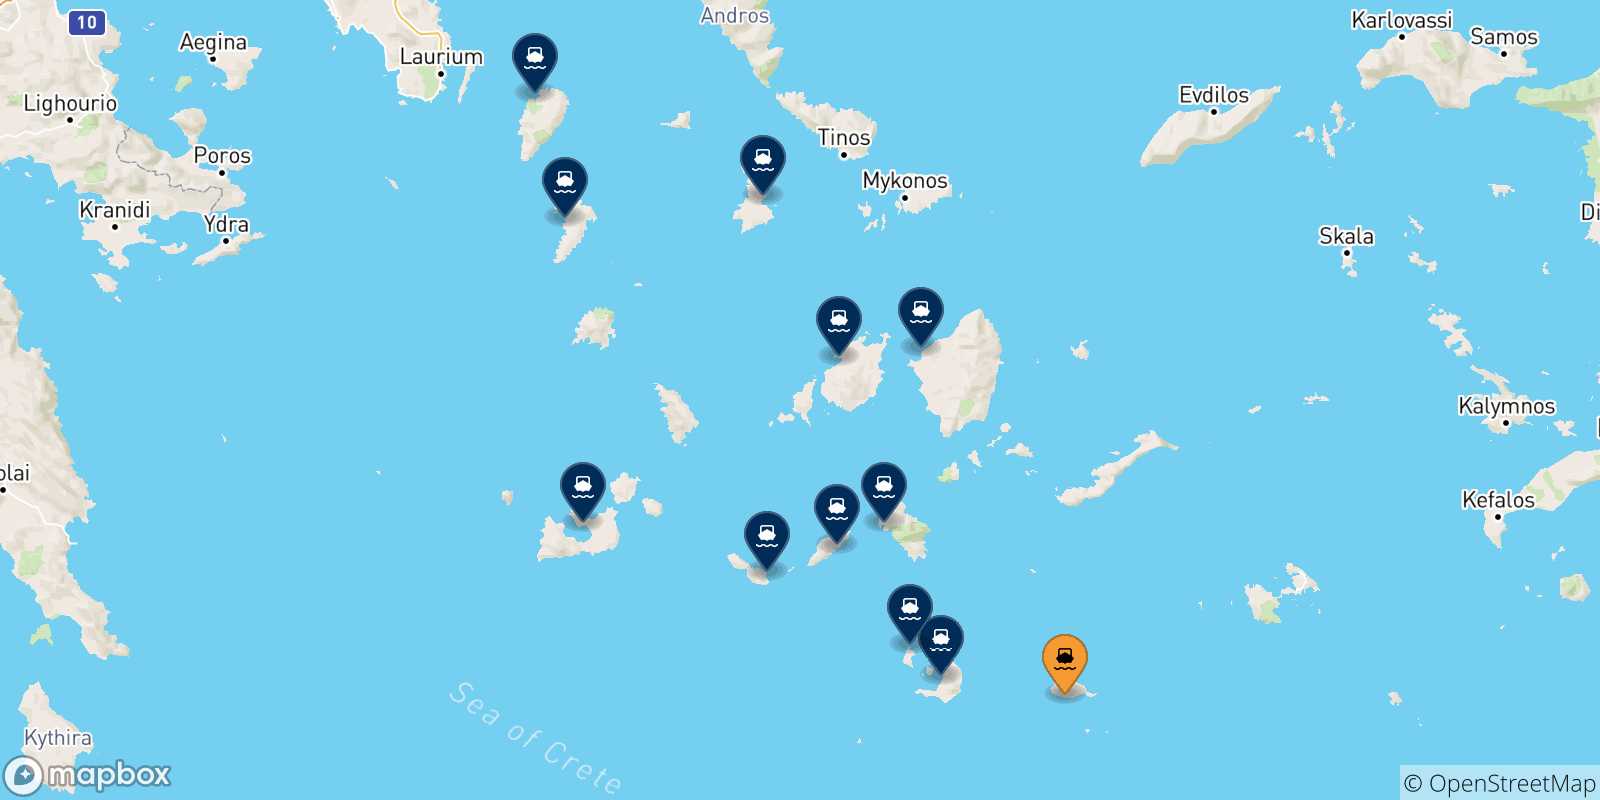 Mappa delle possibili rotte tra Anafi e le Isole Cicladi